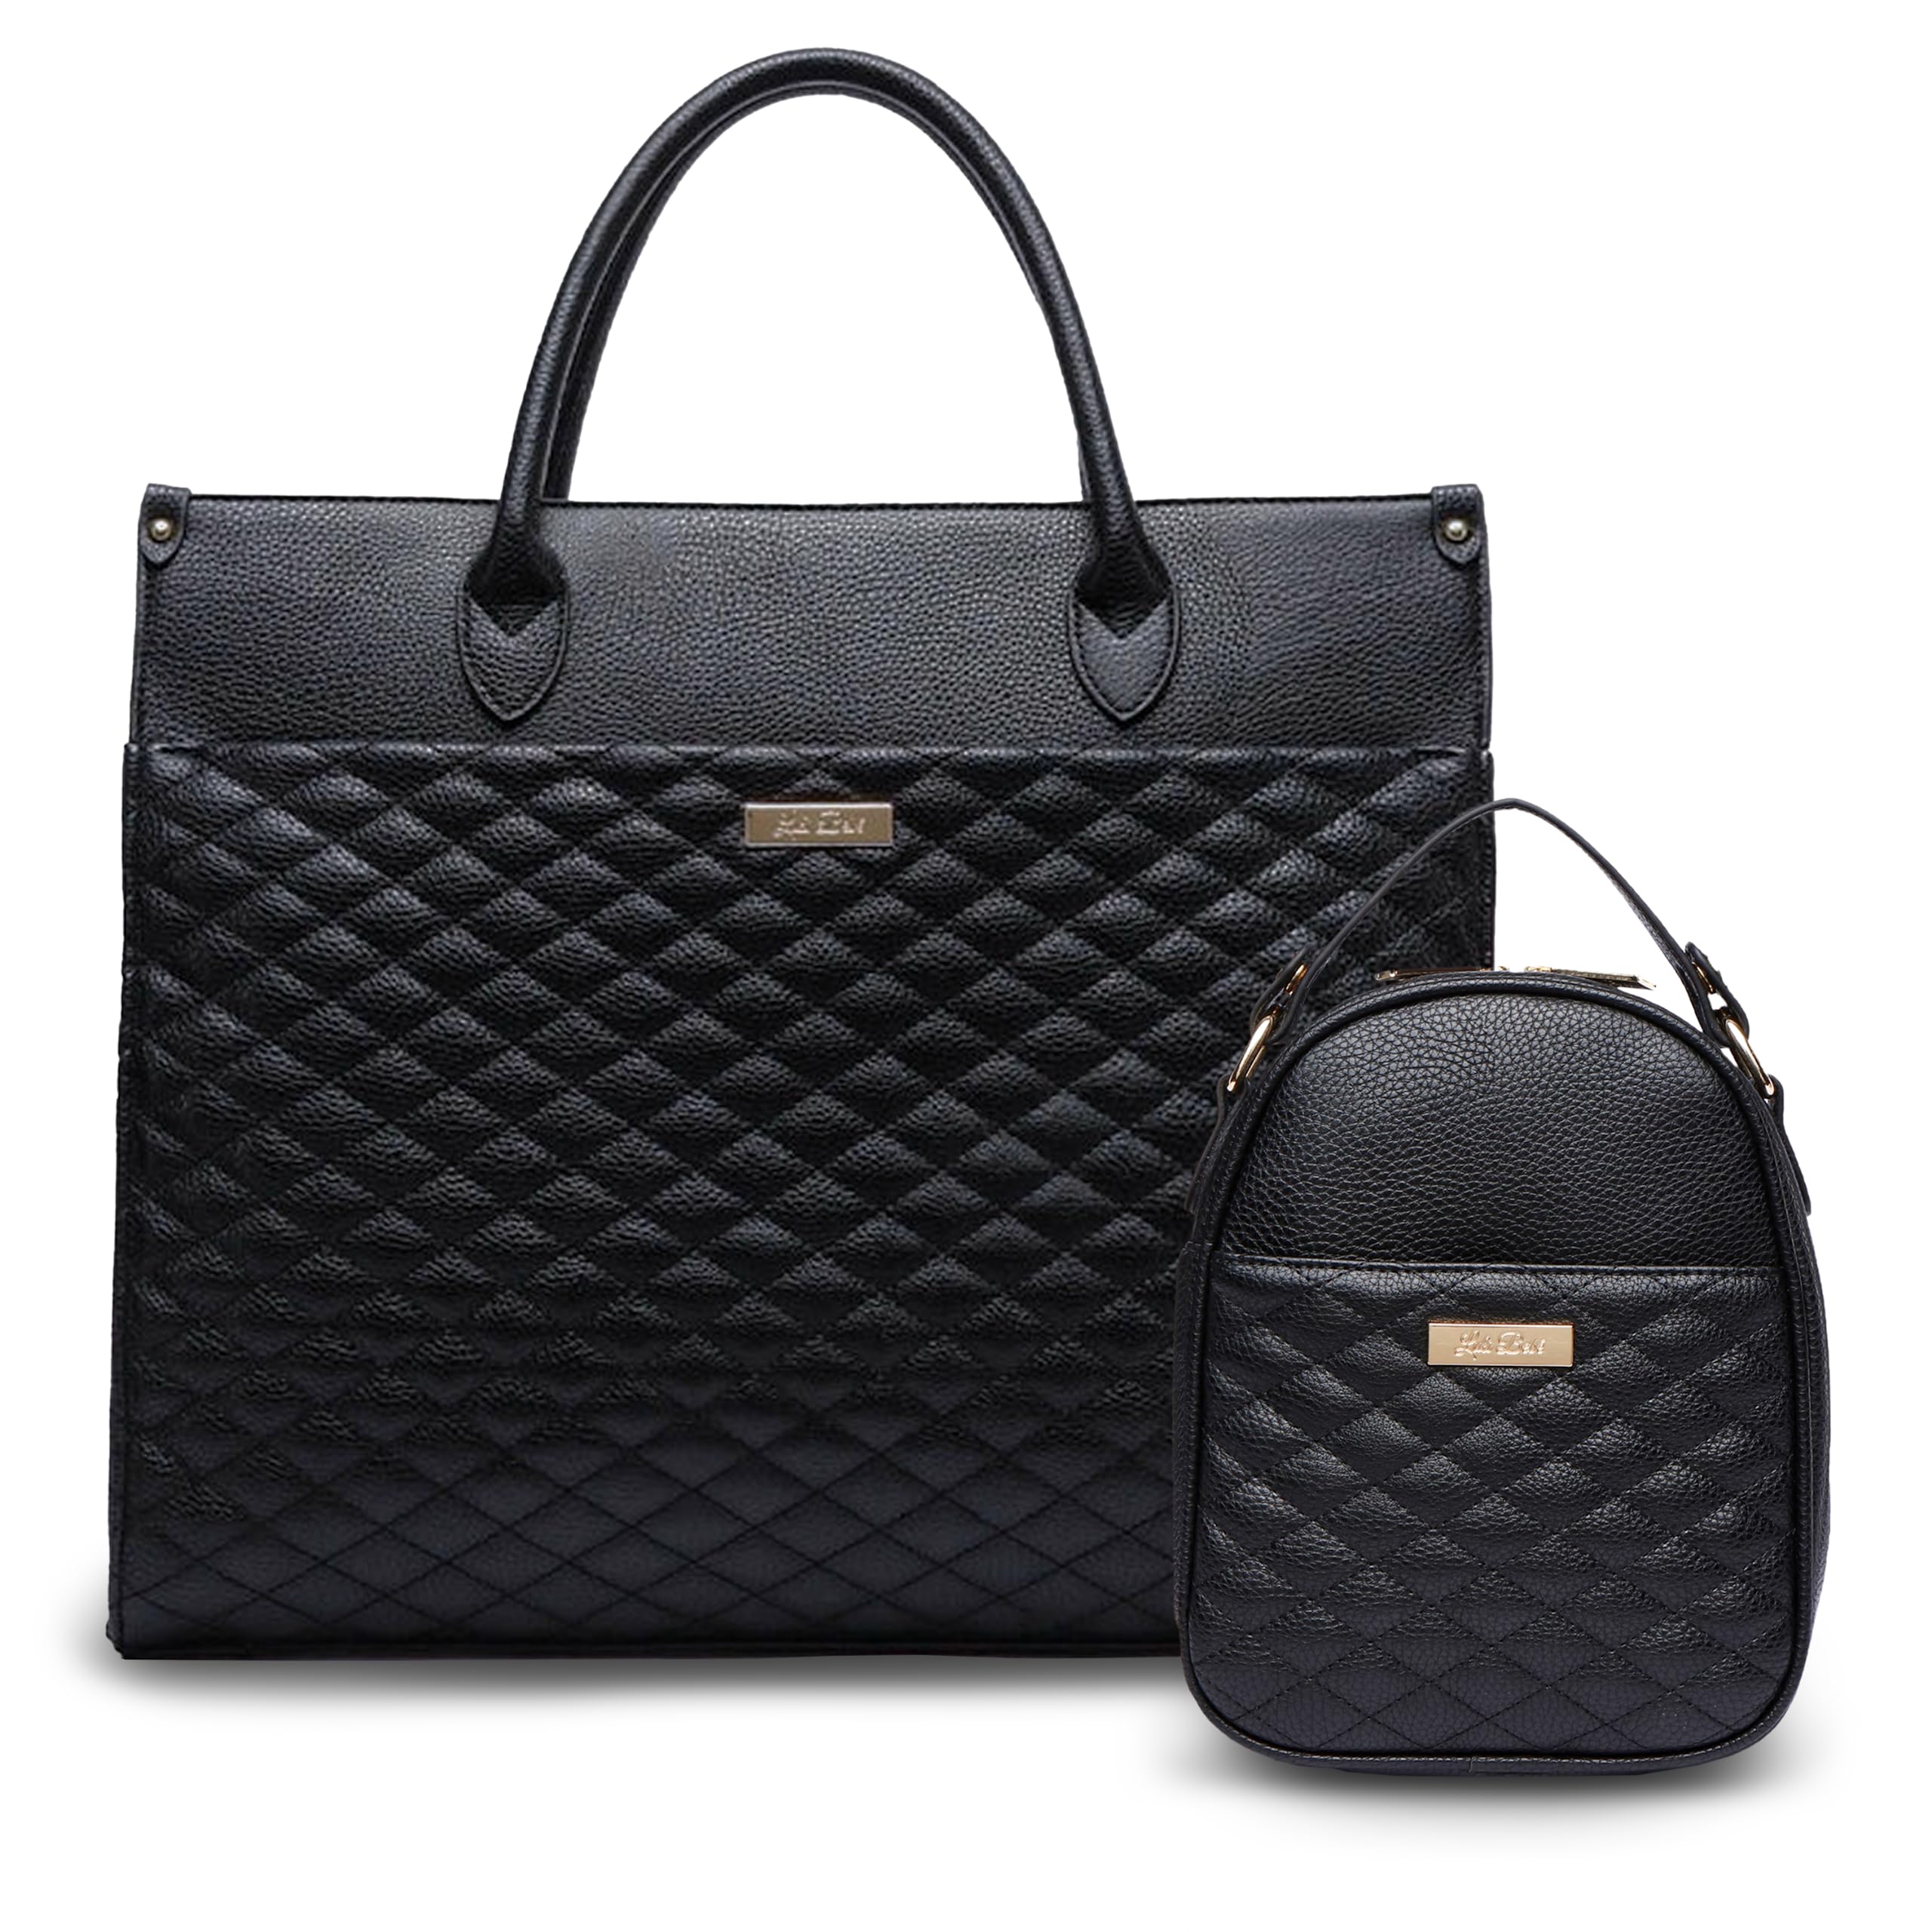 Monaco Tote Bag + Snack Bag by Luli Bebe - Chic Vegan Leather (Ebony Black)